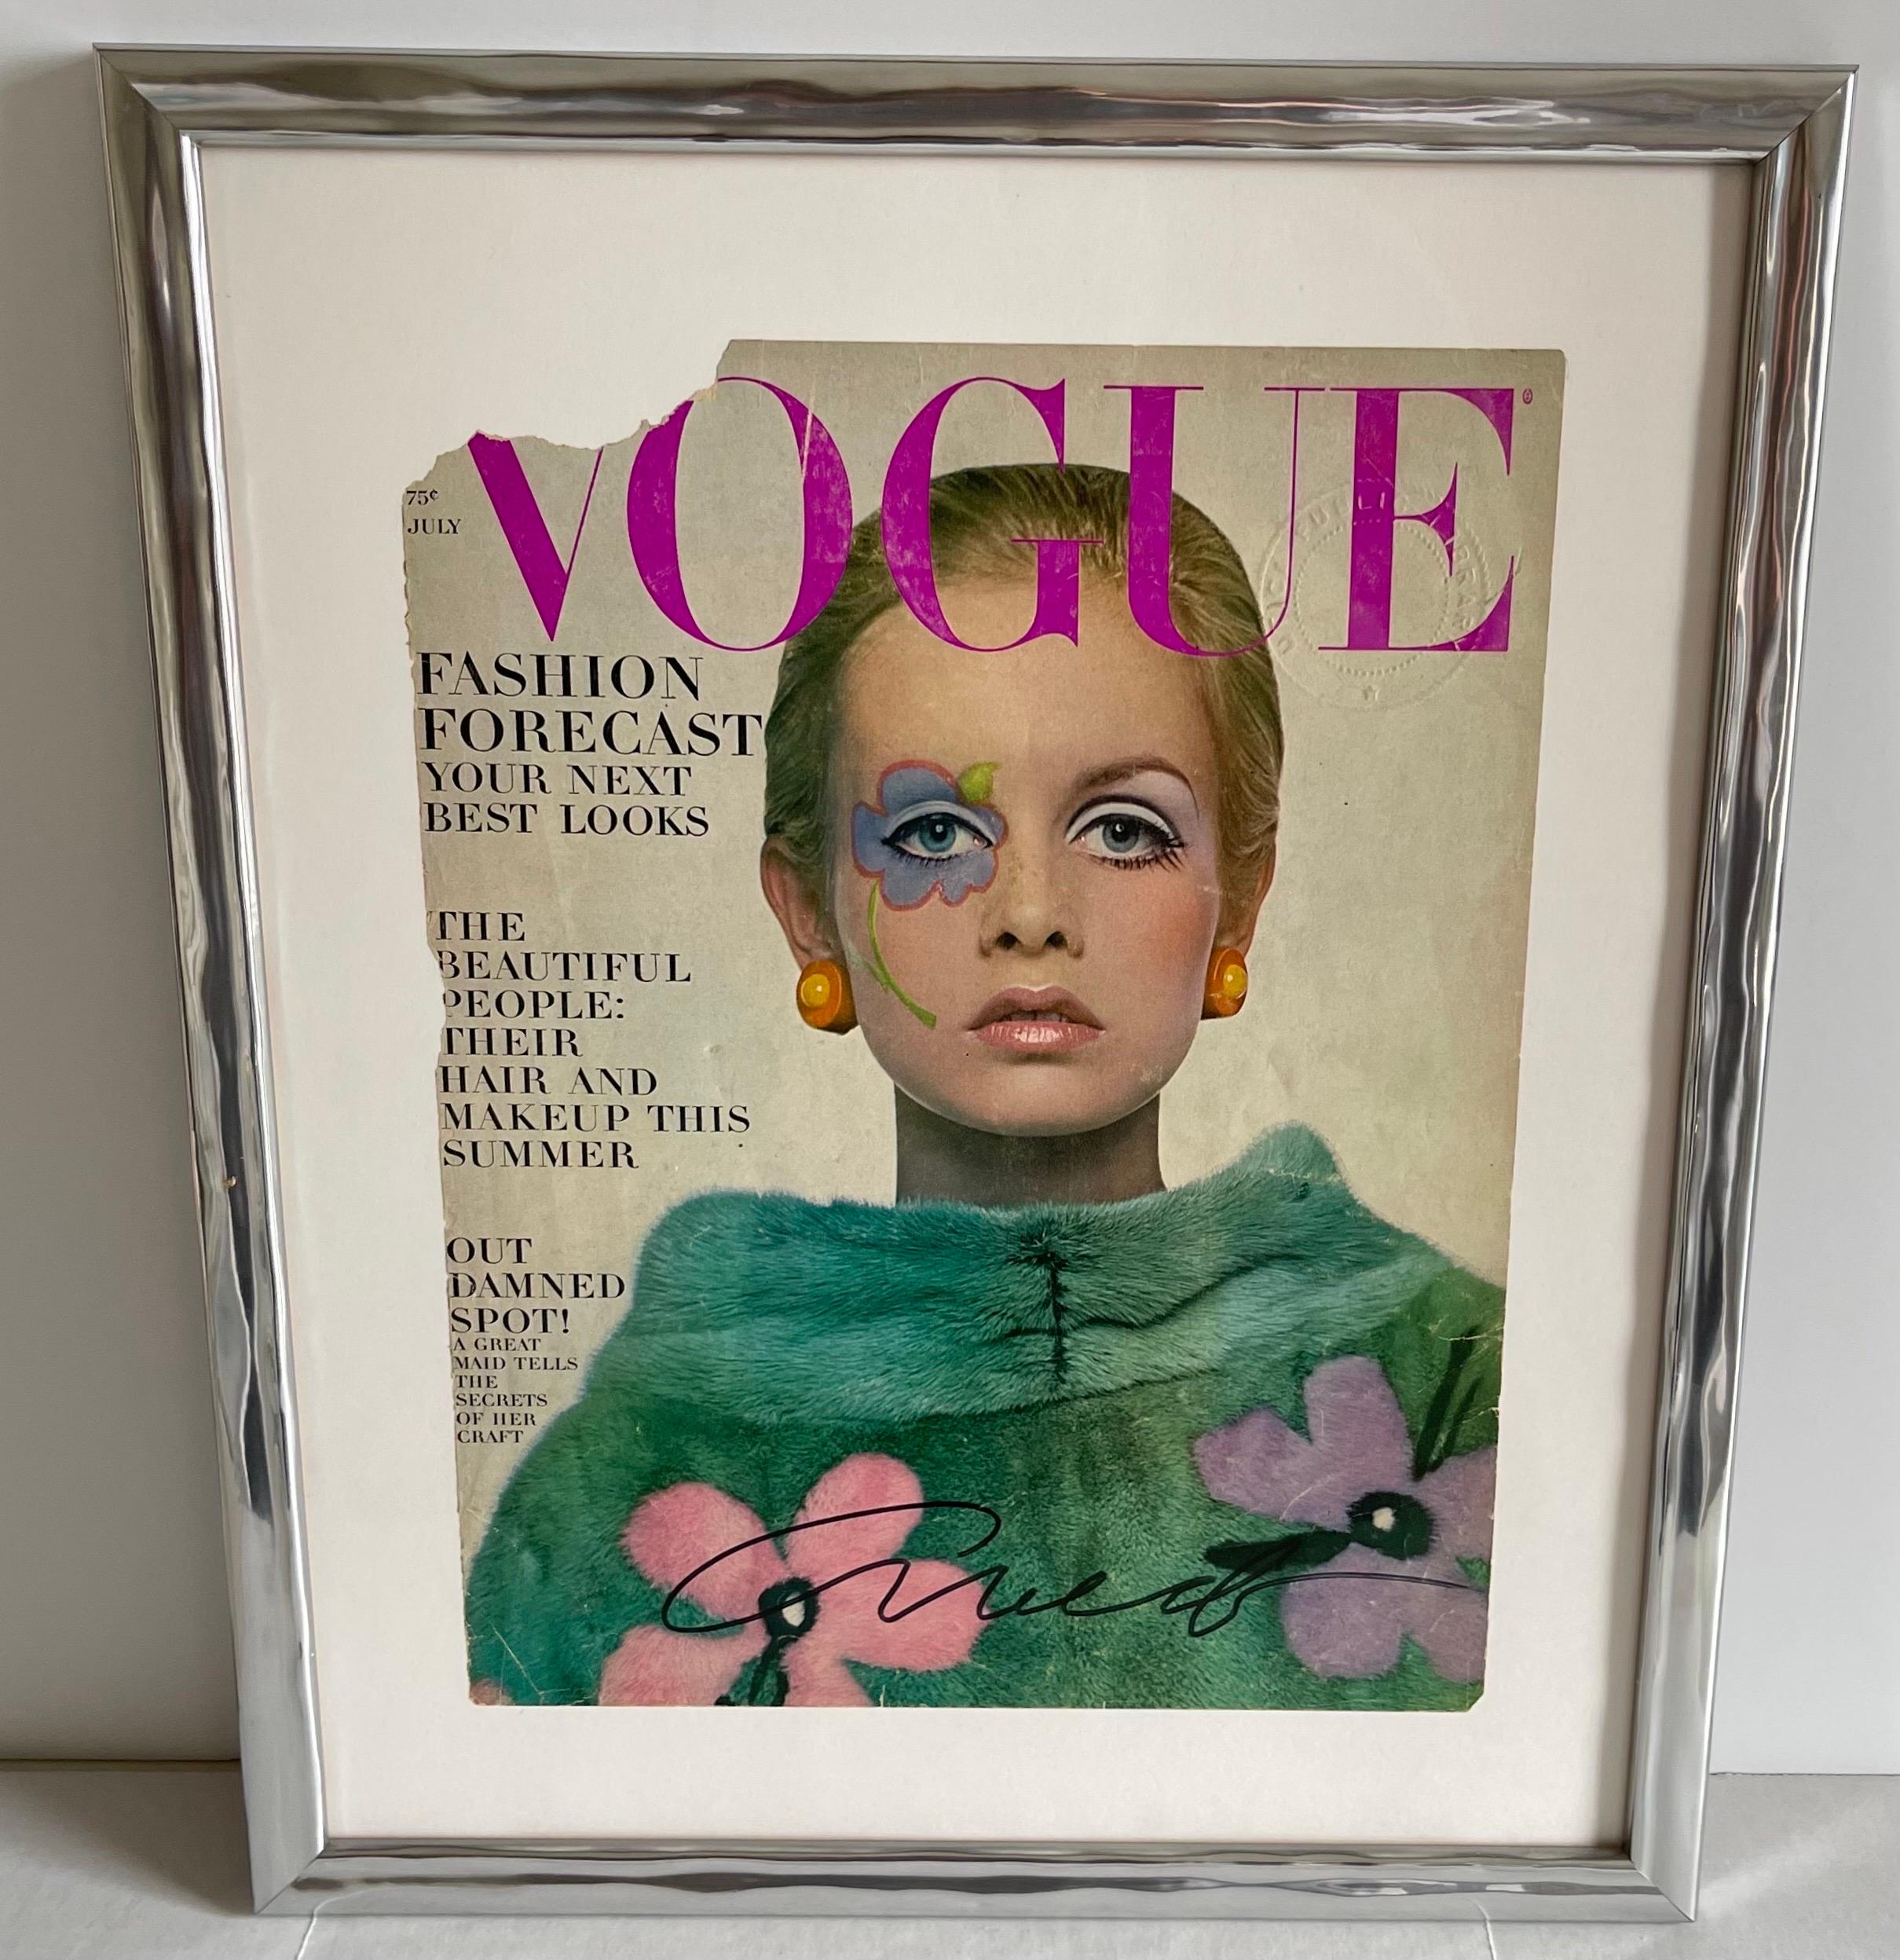 Vogue-Titelblatt Juli 1967 Twiggy, signiert von Richard Avedon. Ex-Libris-Einband im Originalzustand, signiert mit schwarzem Marker von Richard Avedon. Neu mattiert und gerahmt in einem silbernen geschnitzten Holzrahmen.